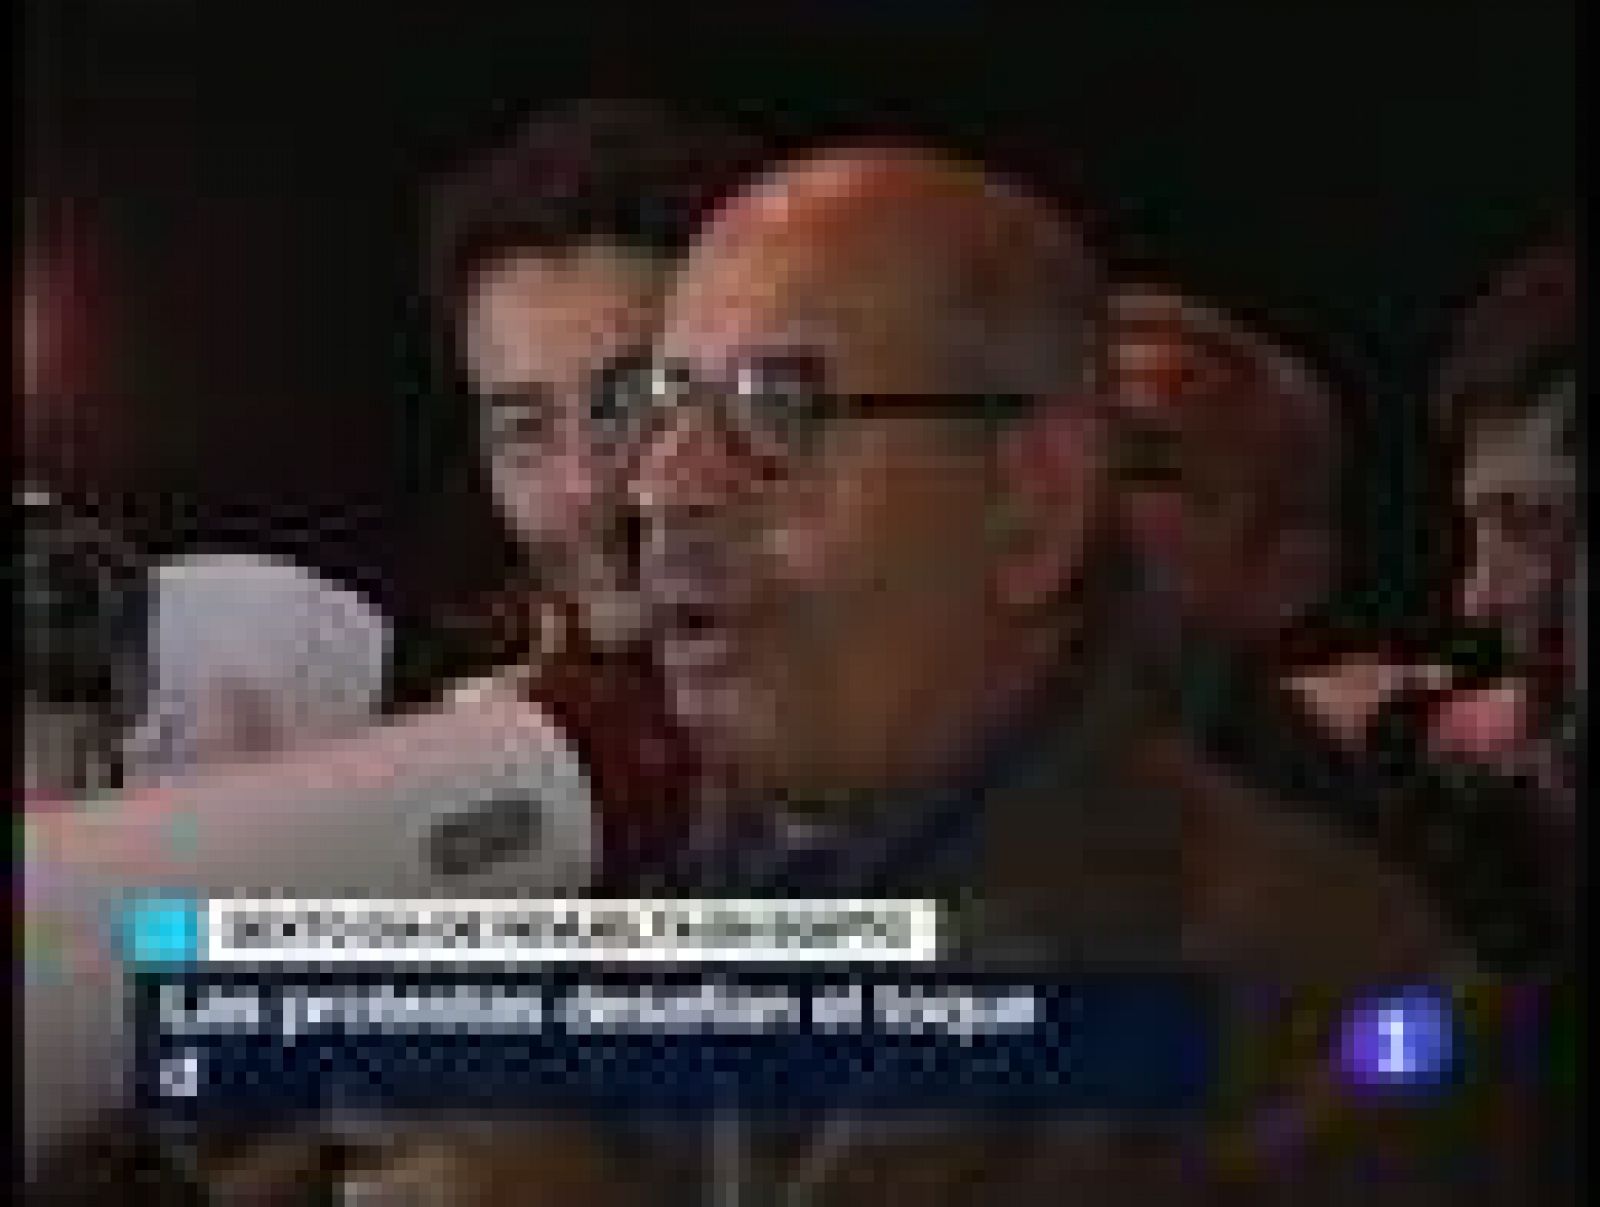  El Baradei toma protagonismo en Egipto